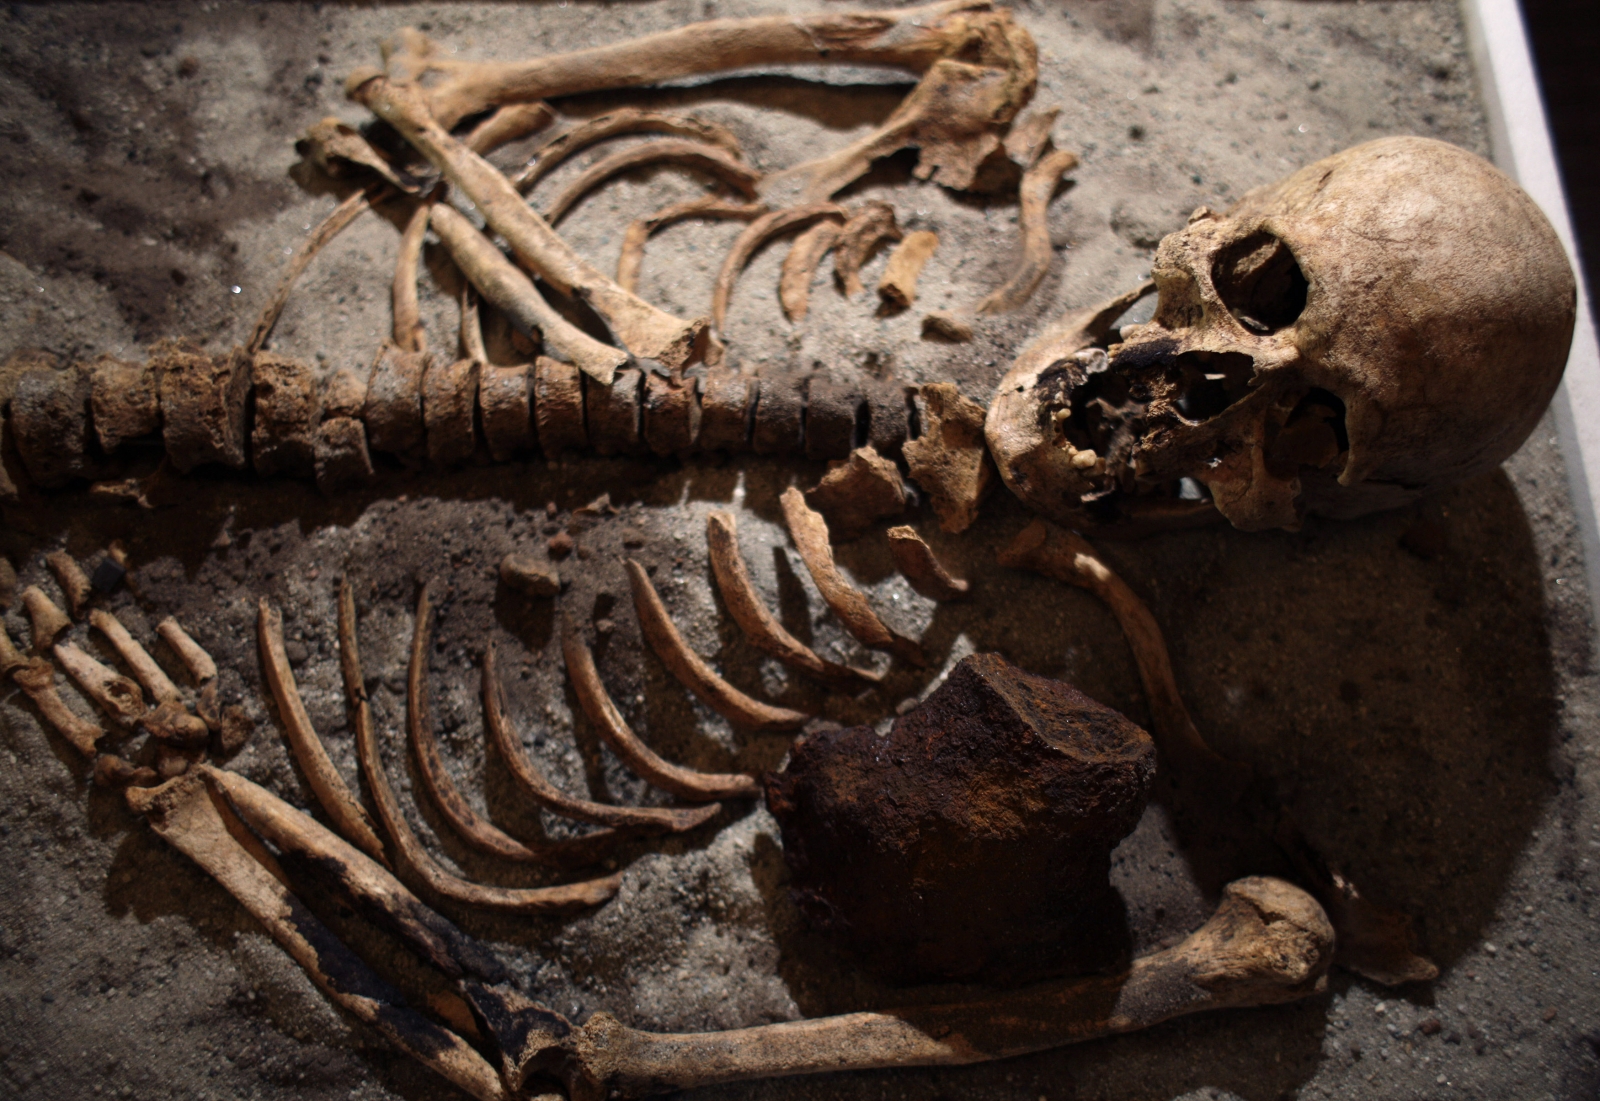 Medieval 'Vampire Grave' Discovered in Bulgaria